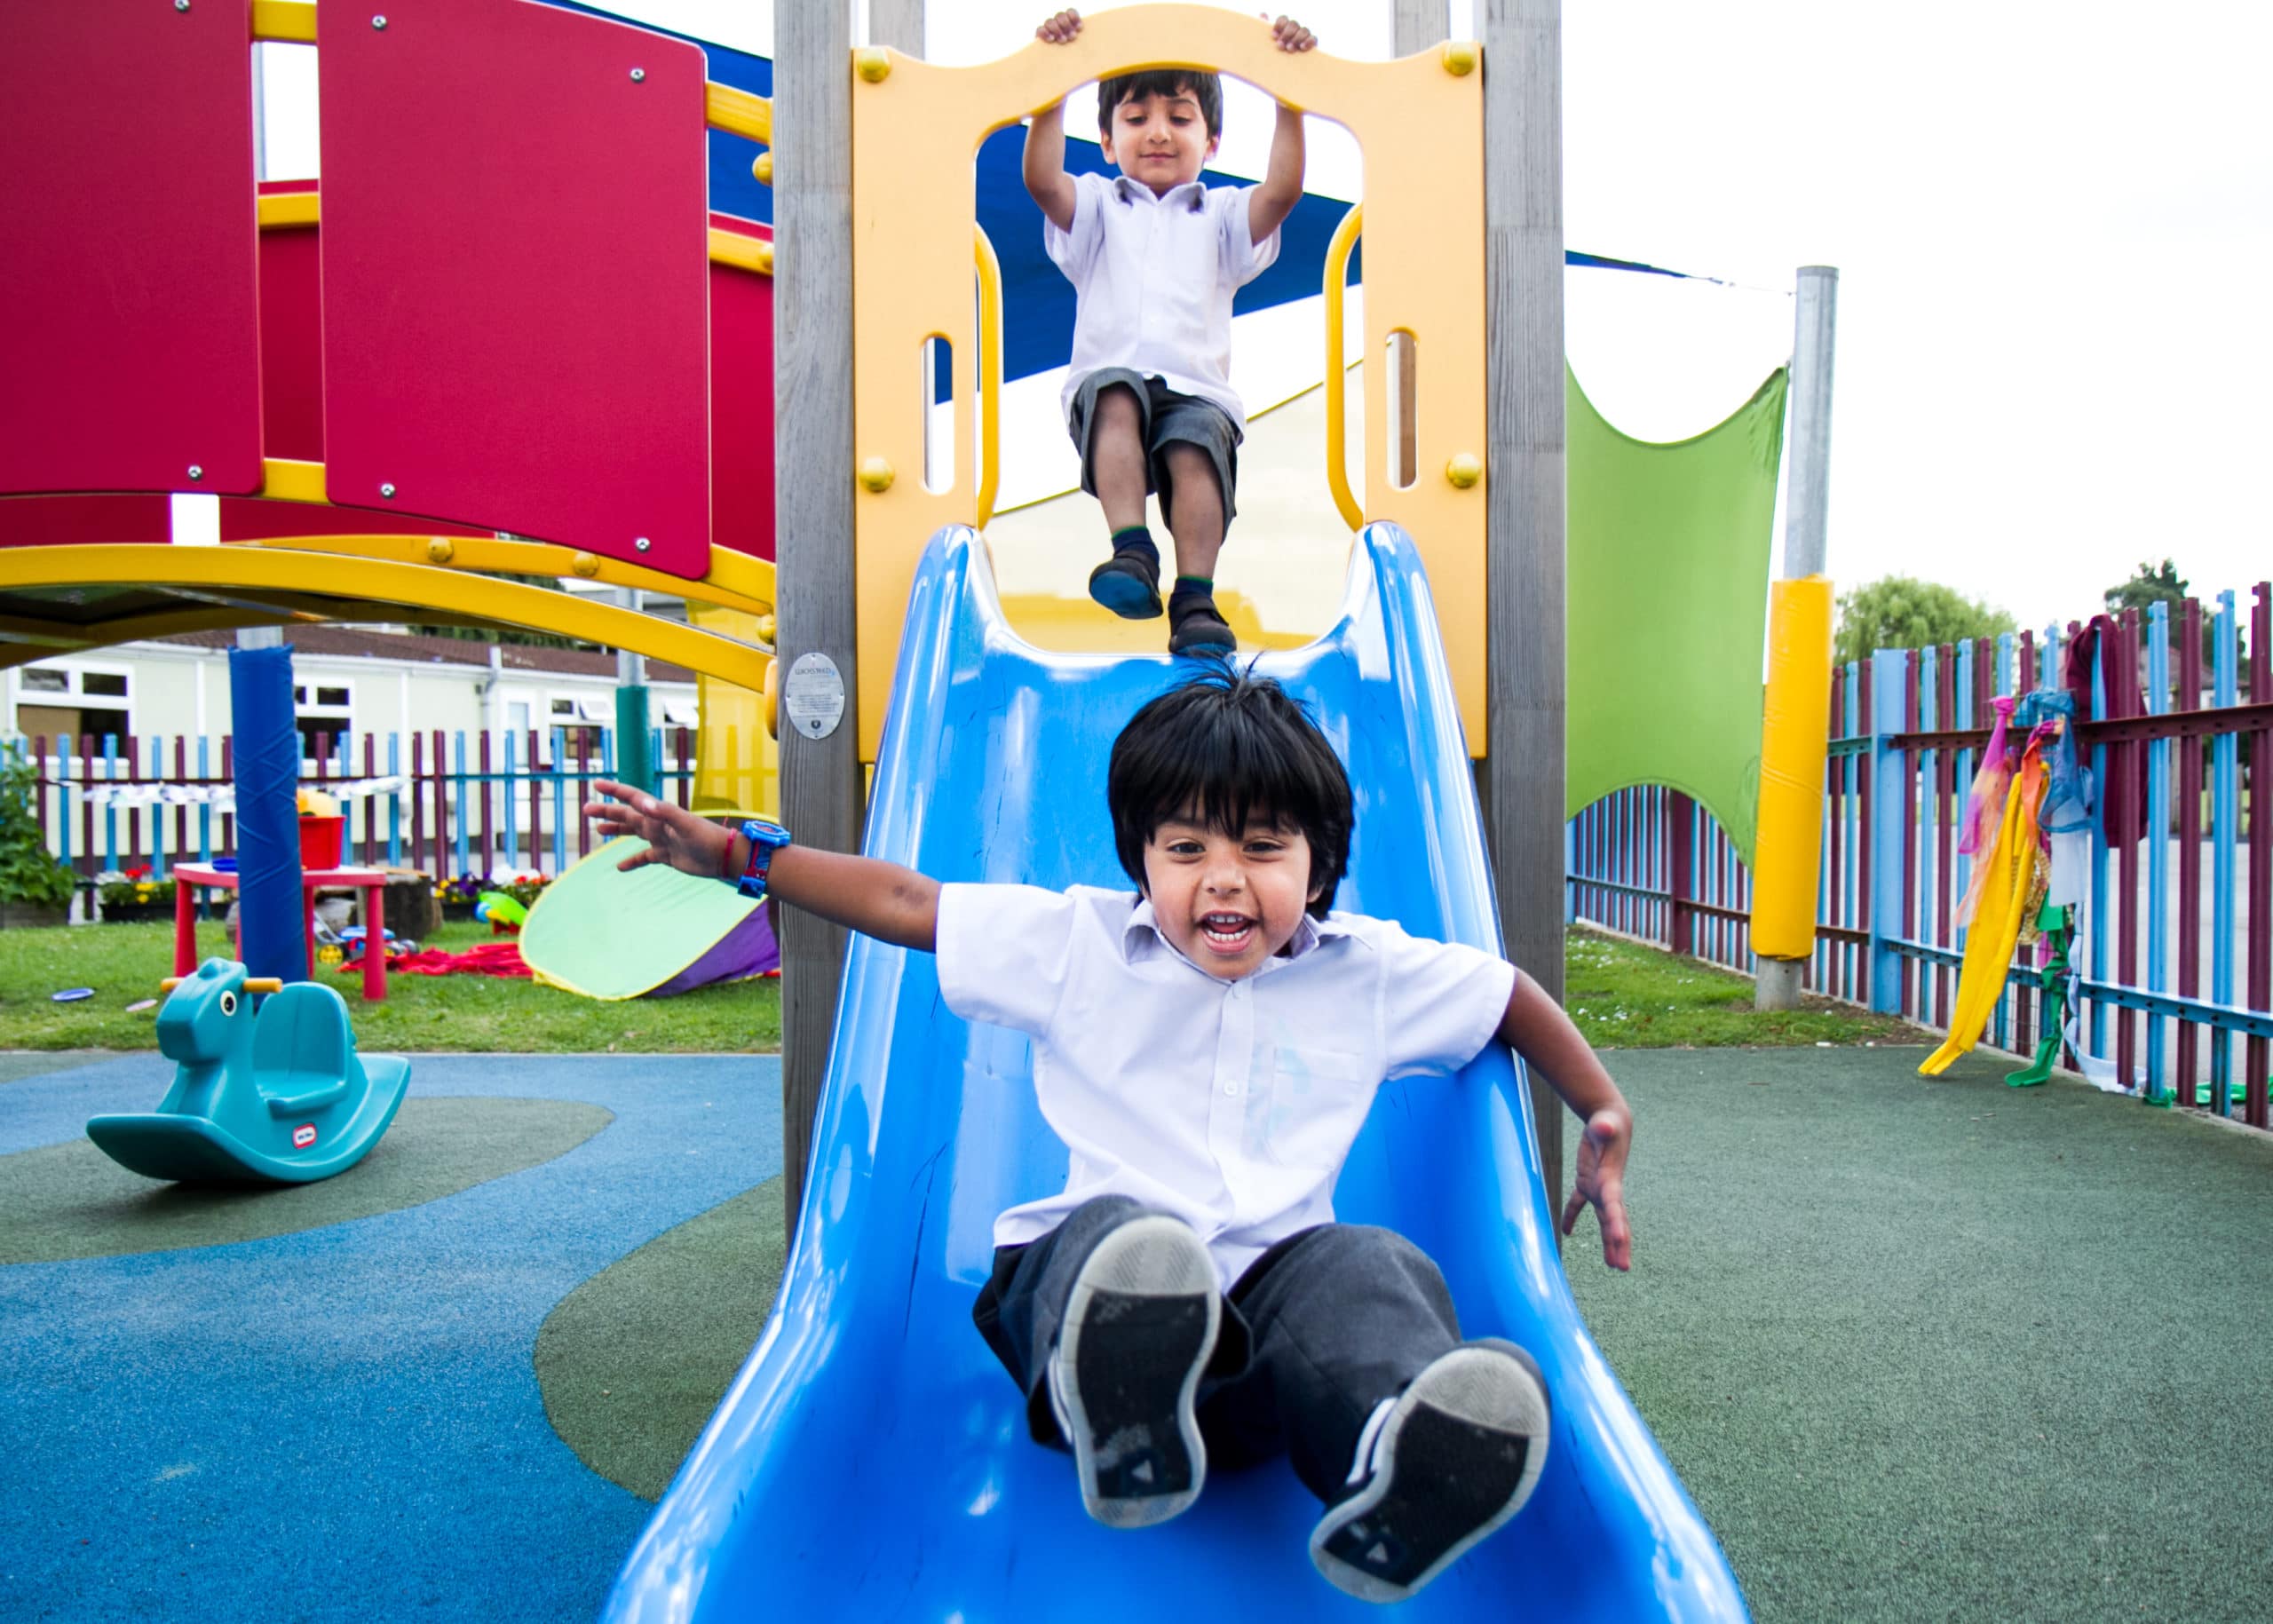 children going down slide in park